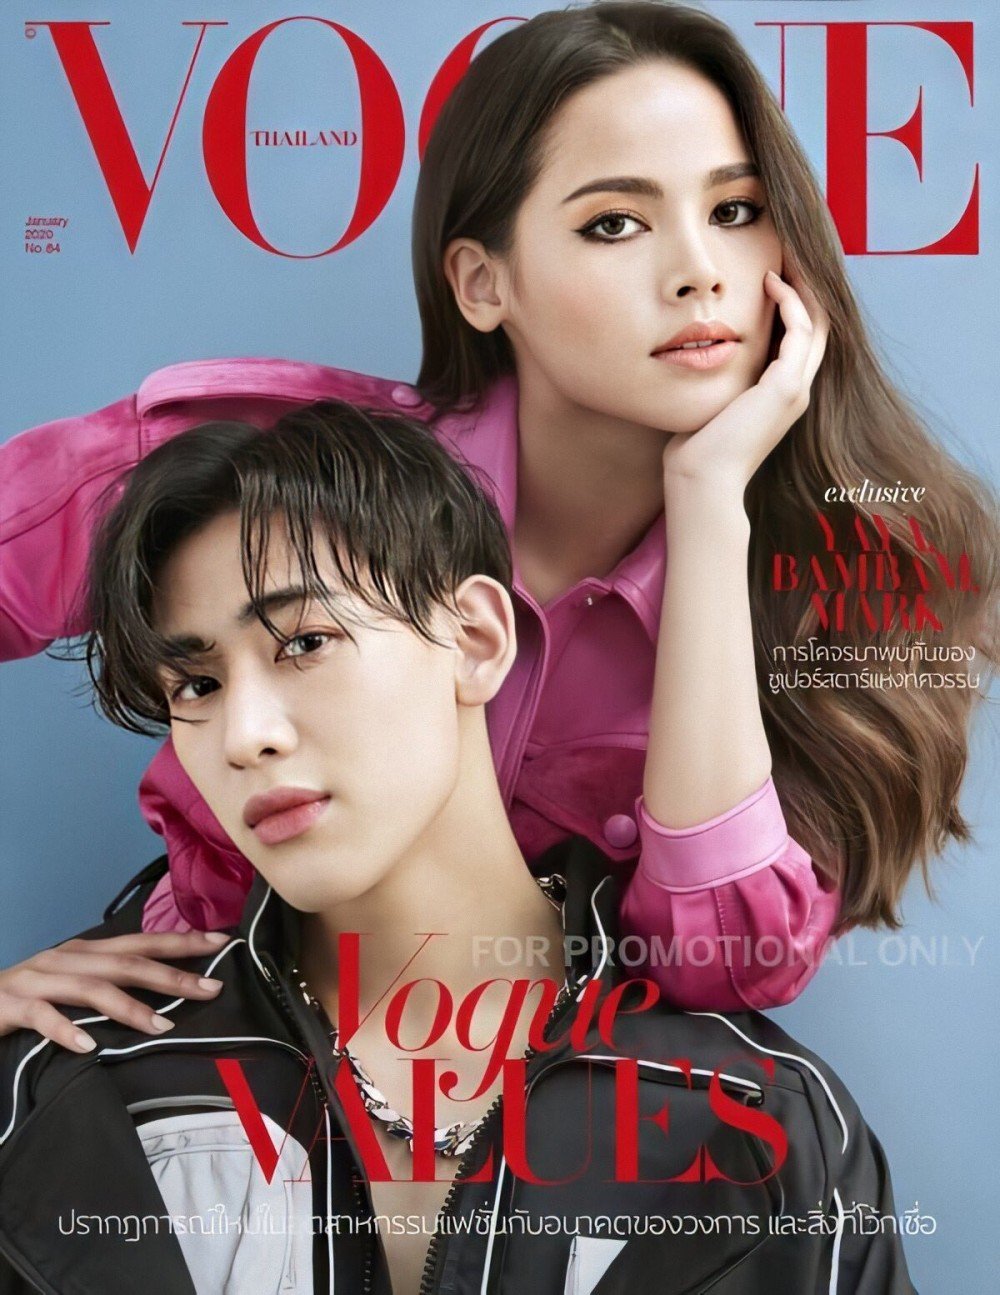 Марк и БэмБэм (GOT7) на обложке Vogue Thailand